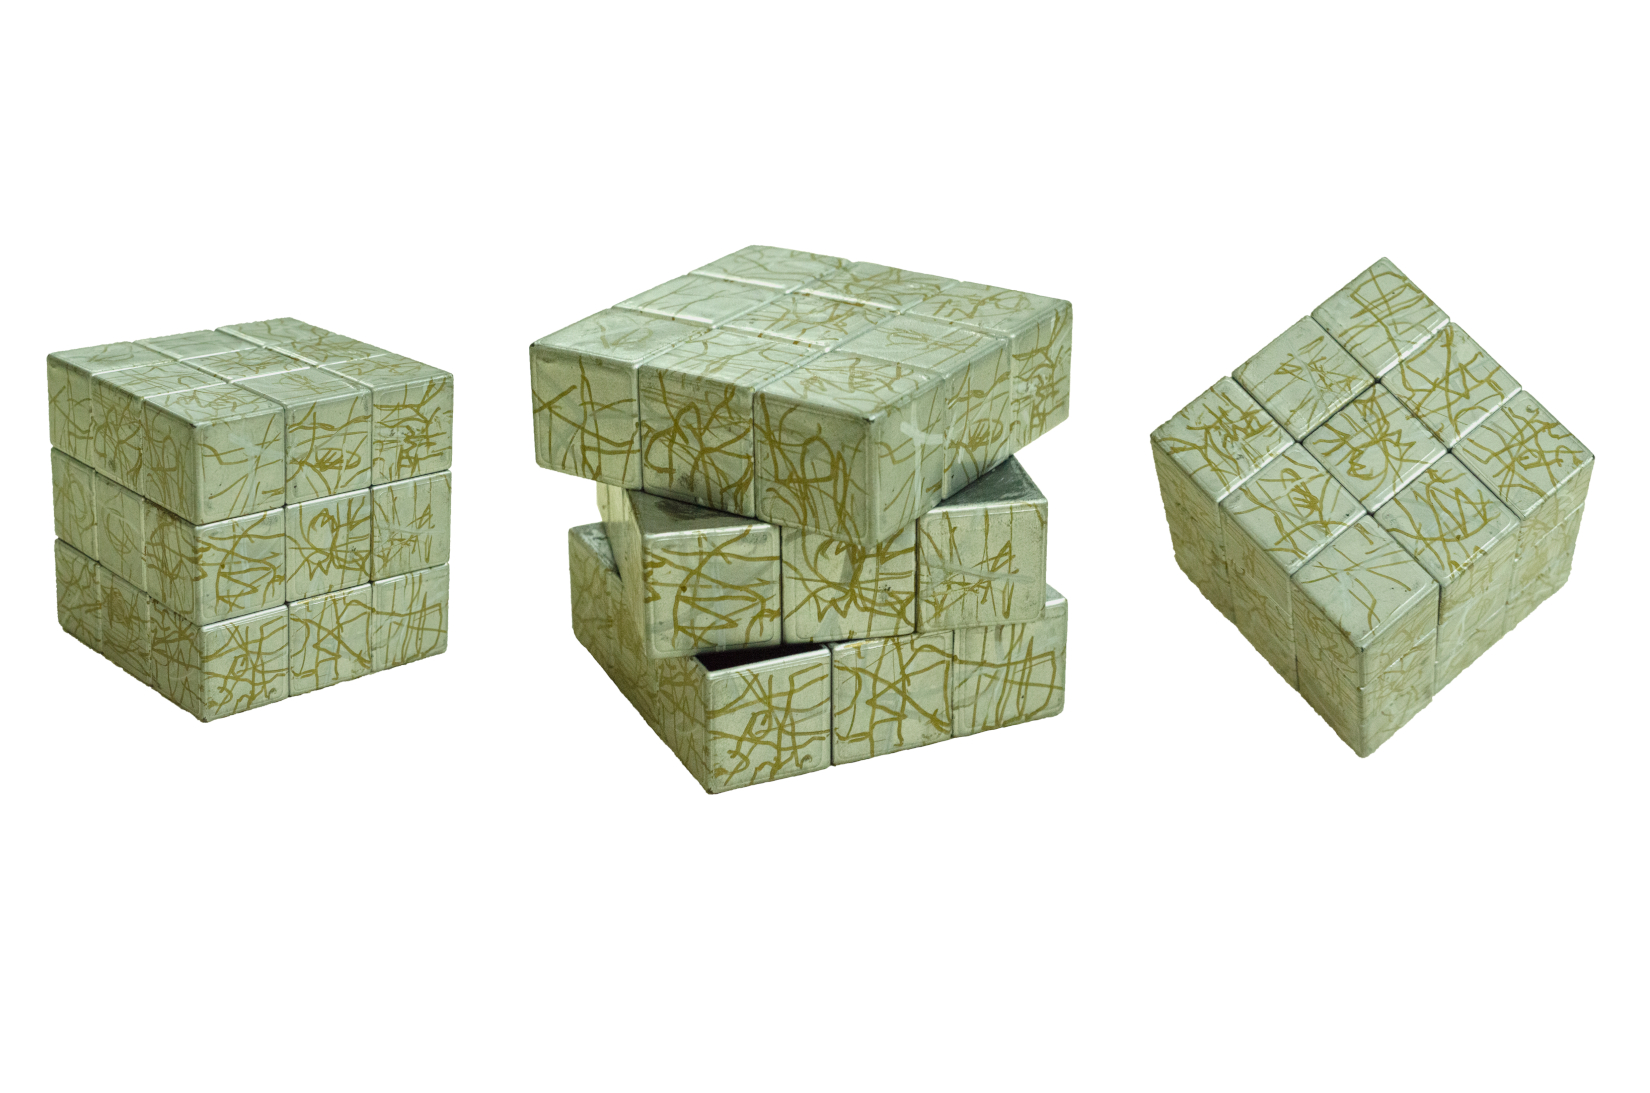 Sagar Sarkar // a solved cube